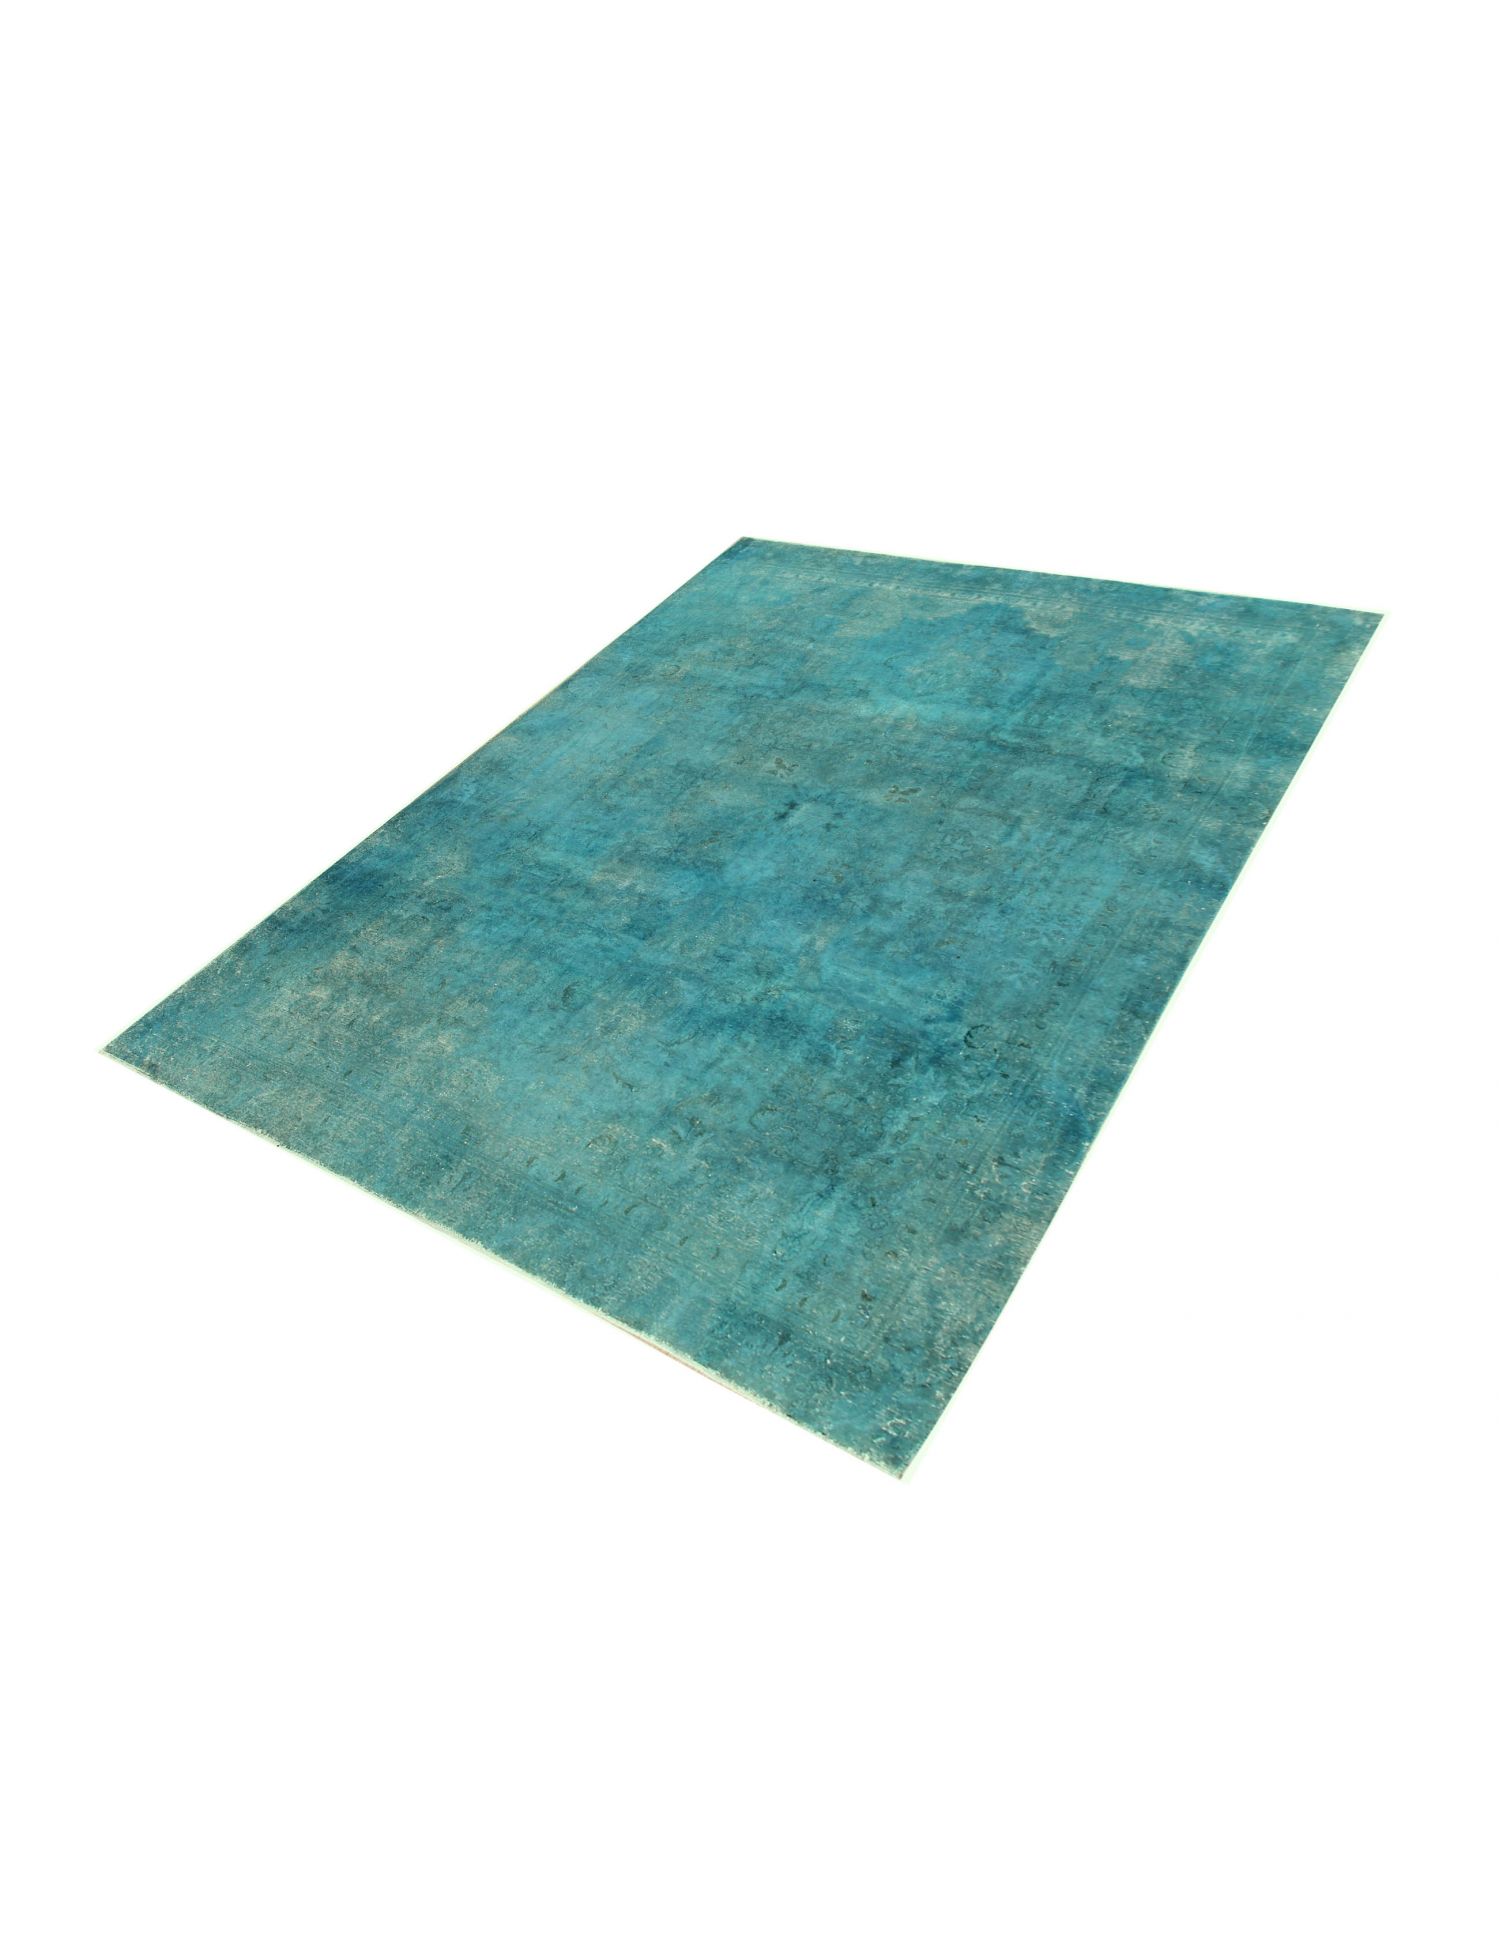 Persischer vintage teppich  türkis <br/>346 x 270 cm